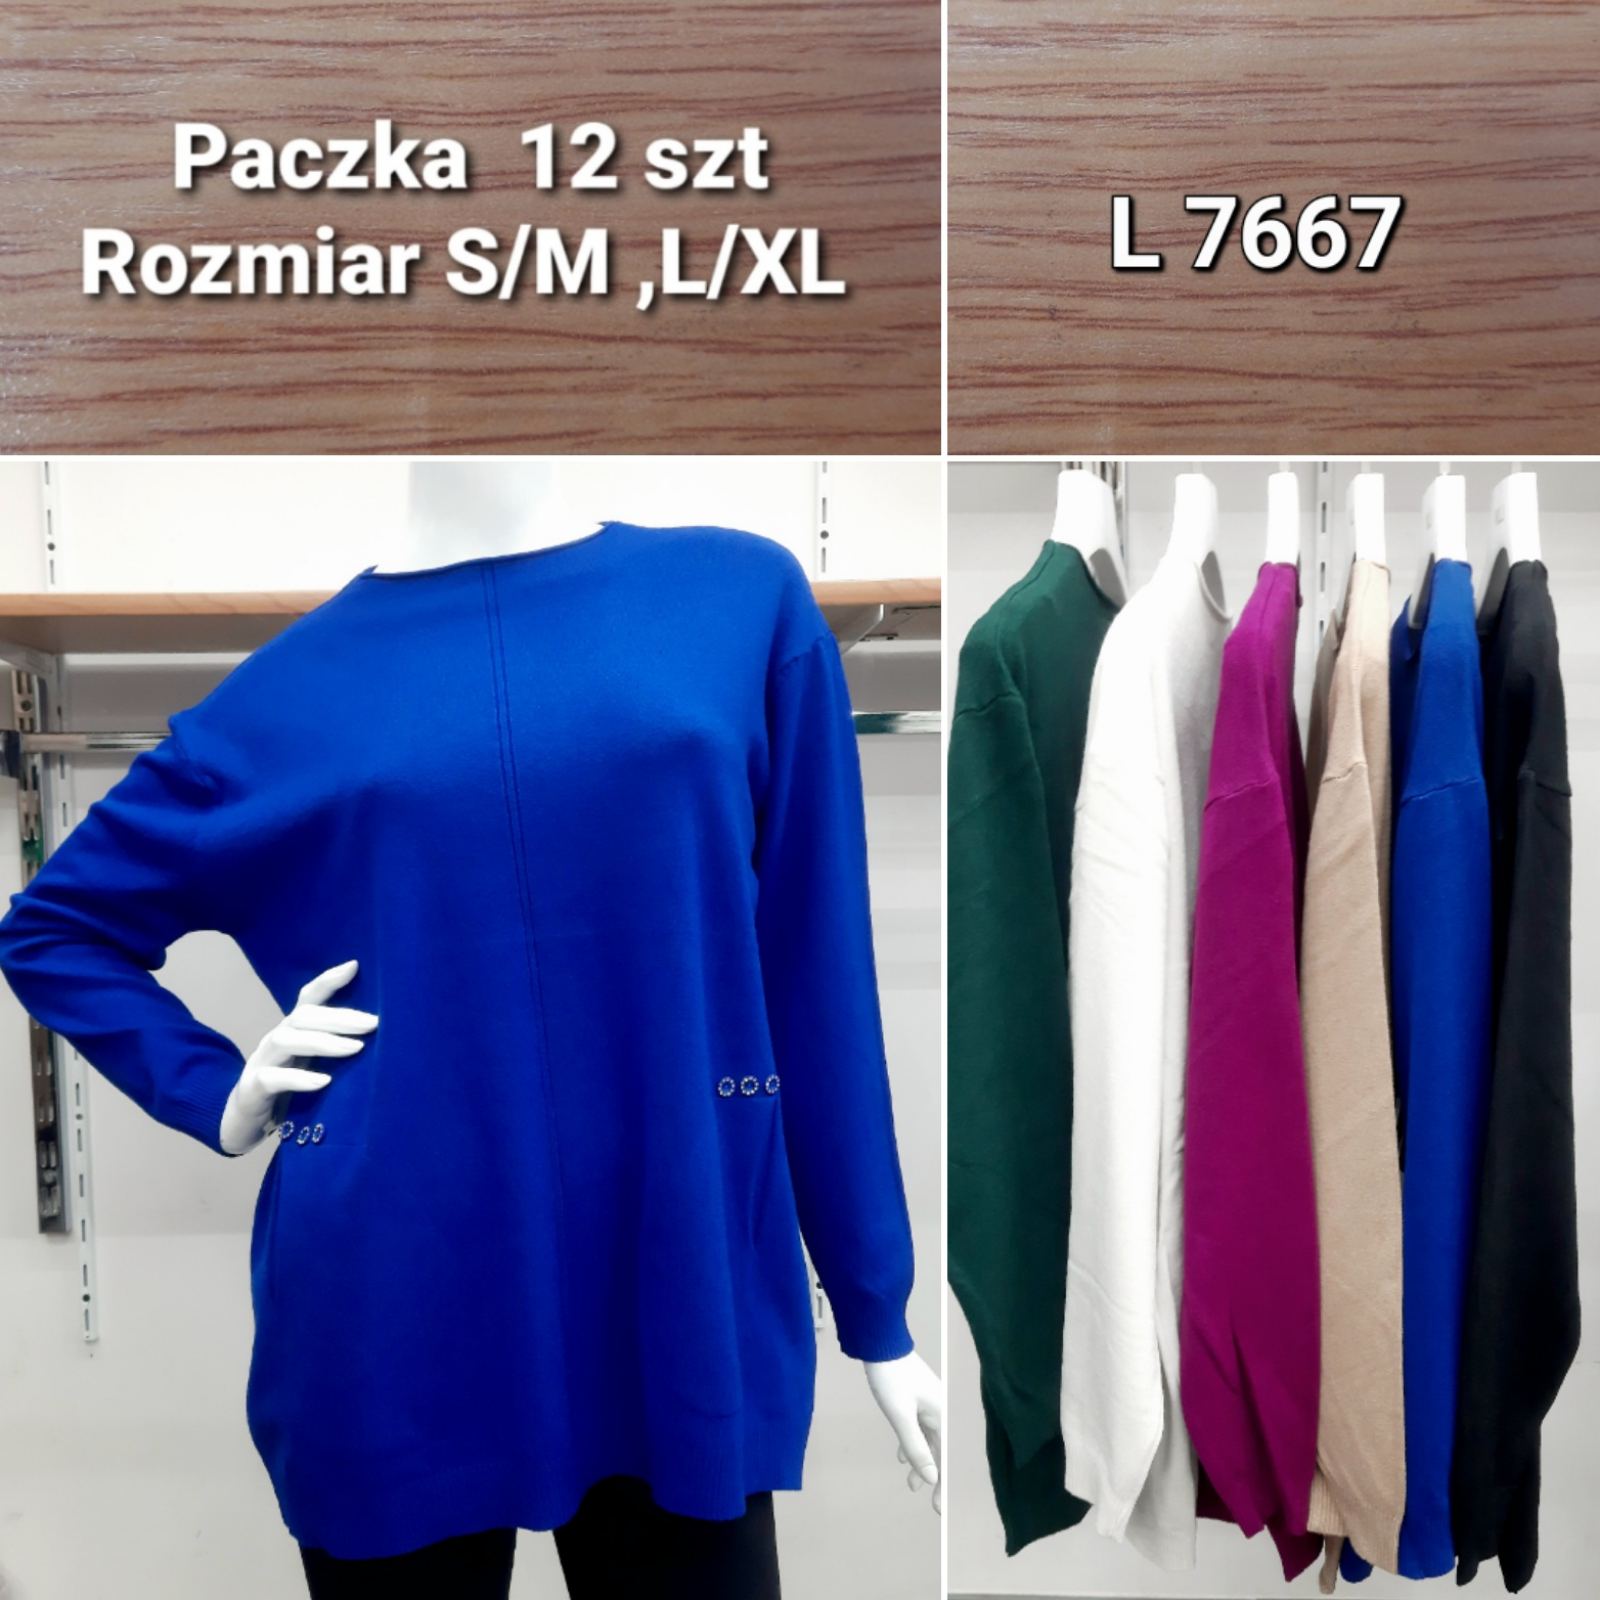 Swetry damskie Roz S/M.L/XL, Mix kolor Paczka 12szt